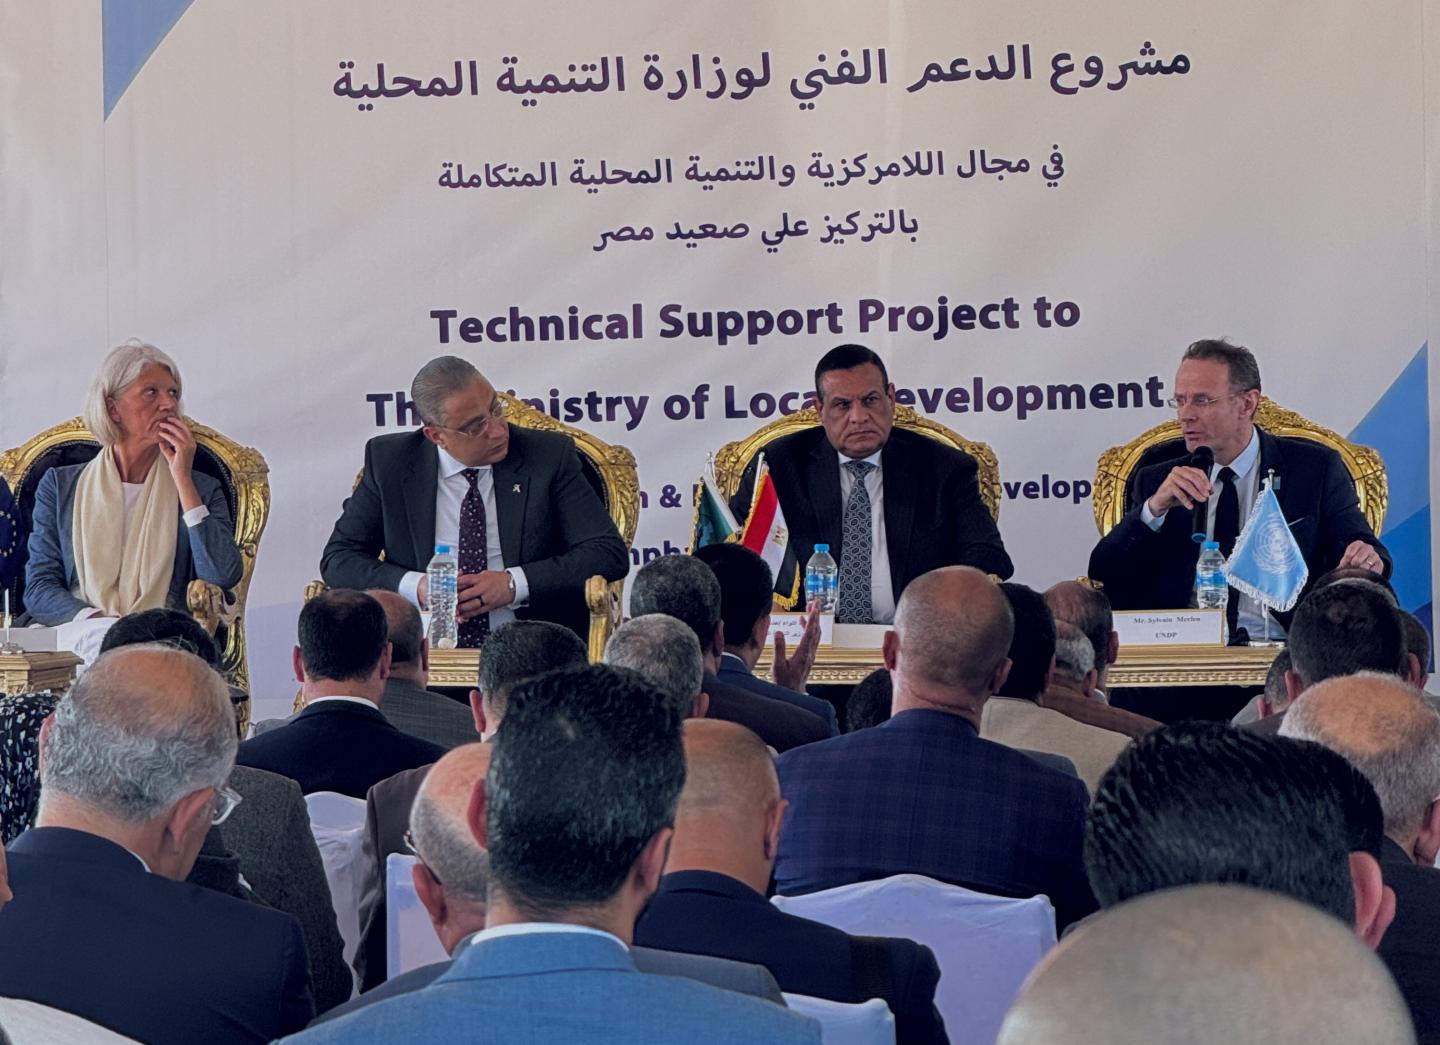 دعم وزارة التنمية المحلية في مجالات اللامركزية والتنمية المحلية المتكاملة مع التركيز على مشروع صعيد مصر